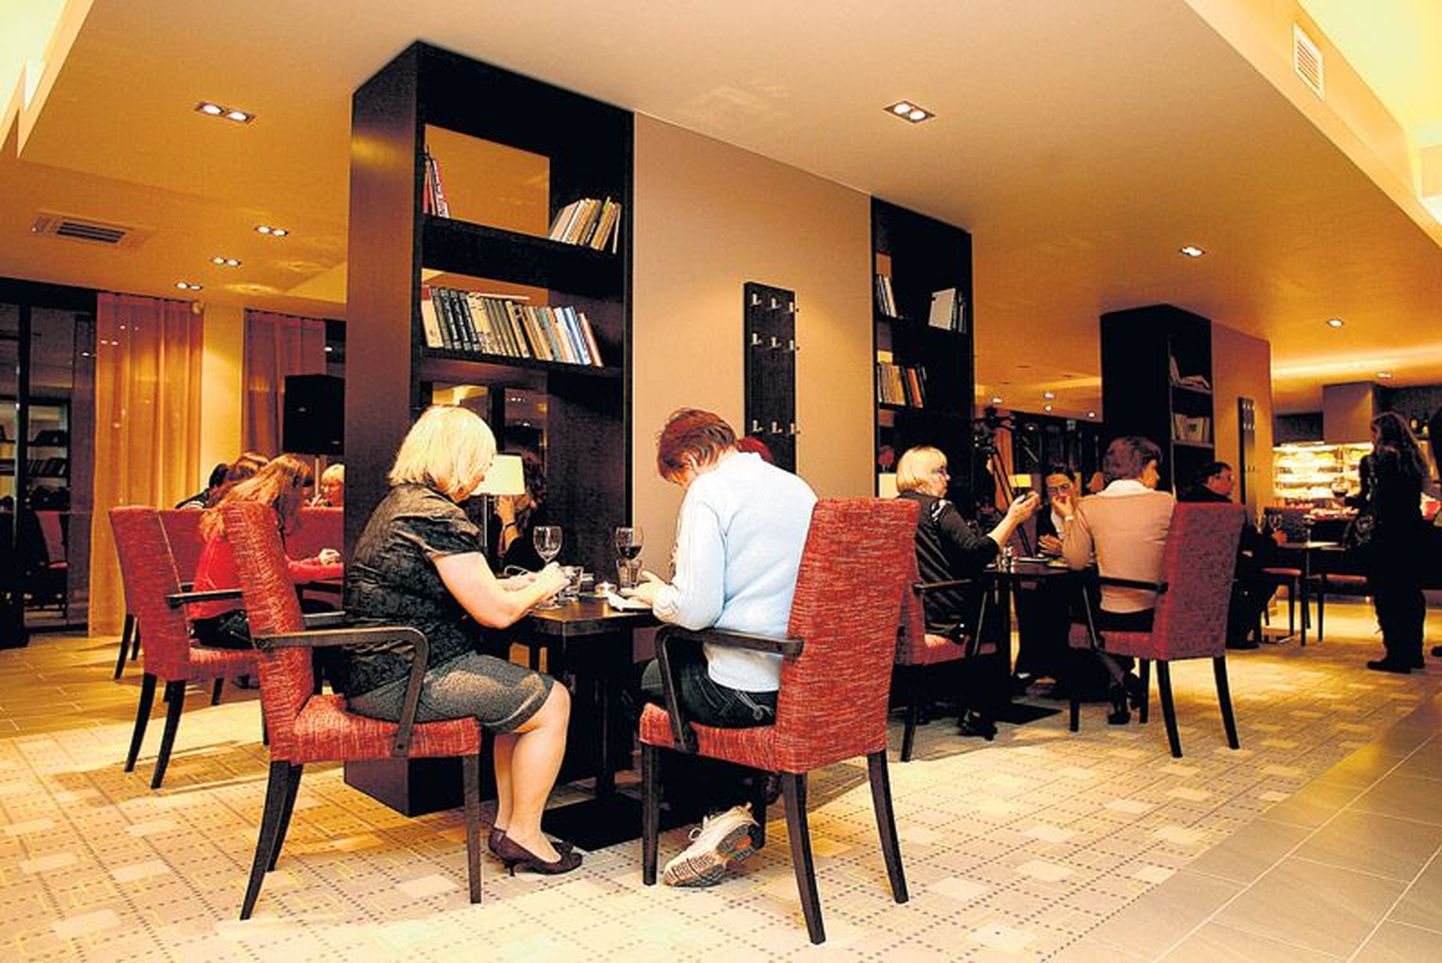 Raamatukogu ja ülikooli töötajad proovisid reedesel avapeol kohviku toiduvalikut. Mõnusa klaverimuusika kõrvale said soovijad raamaturiiulist vahepalaks valida ka ilukirjandust.